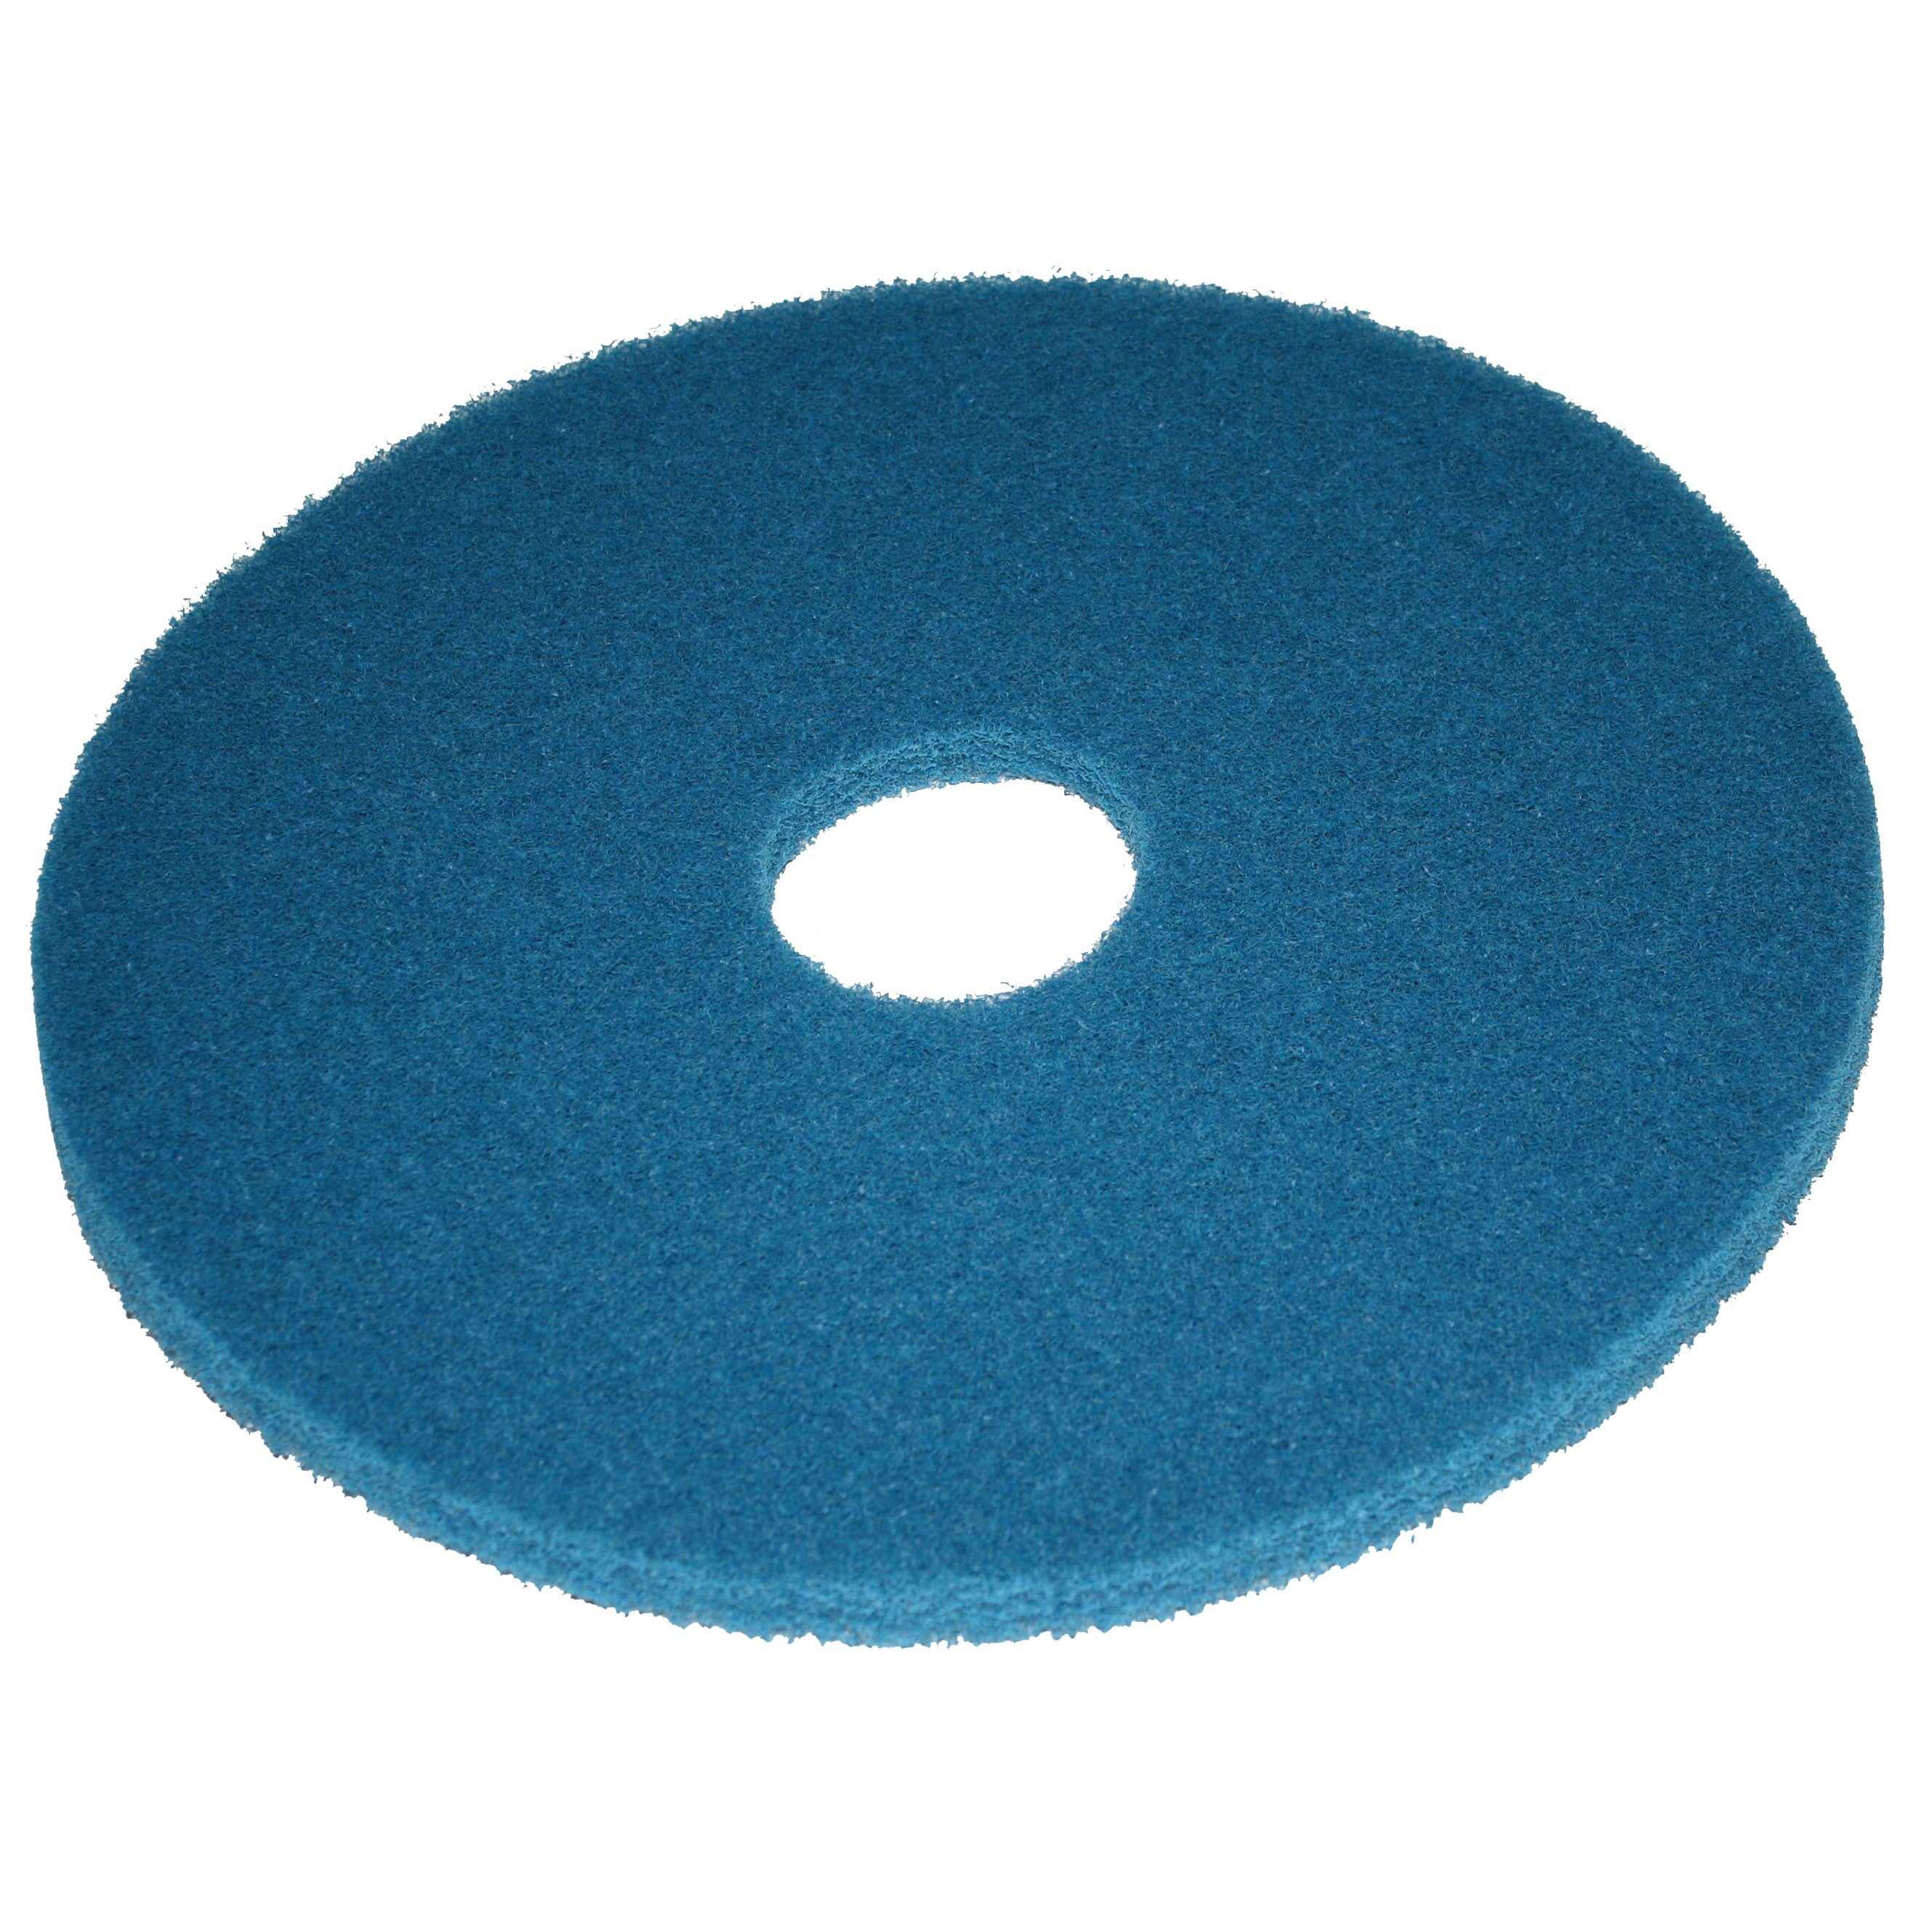 Pad bleu, Ø 254 mm, polyester